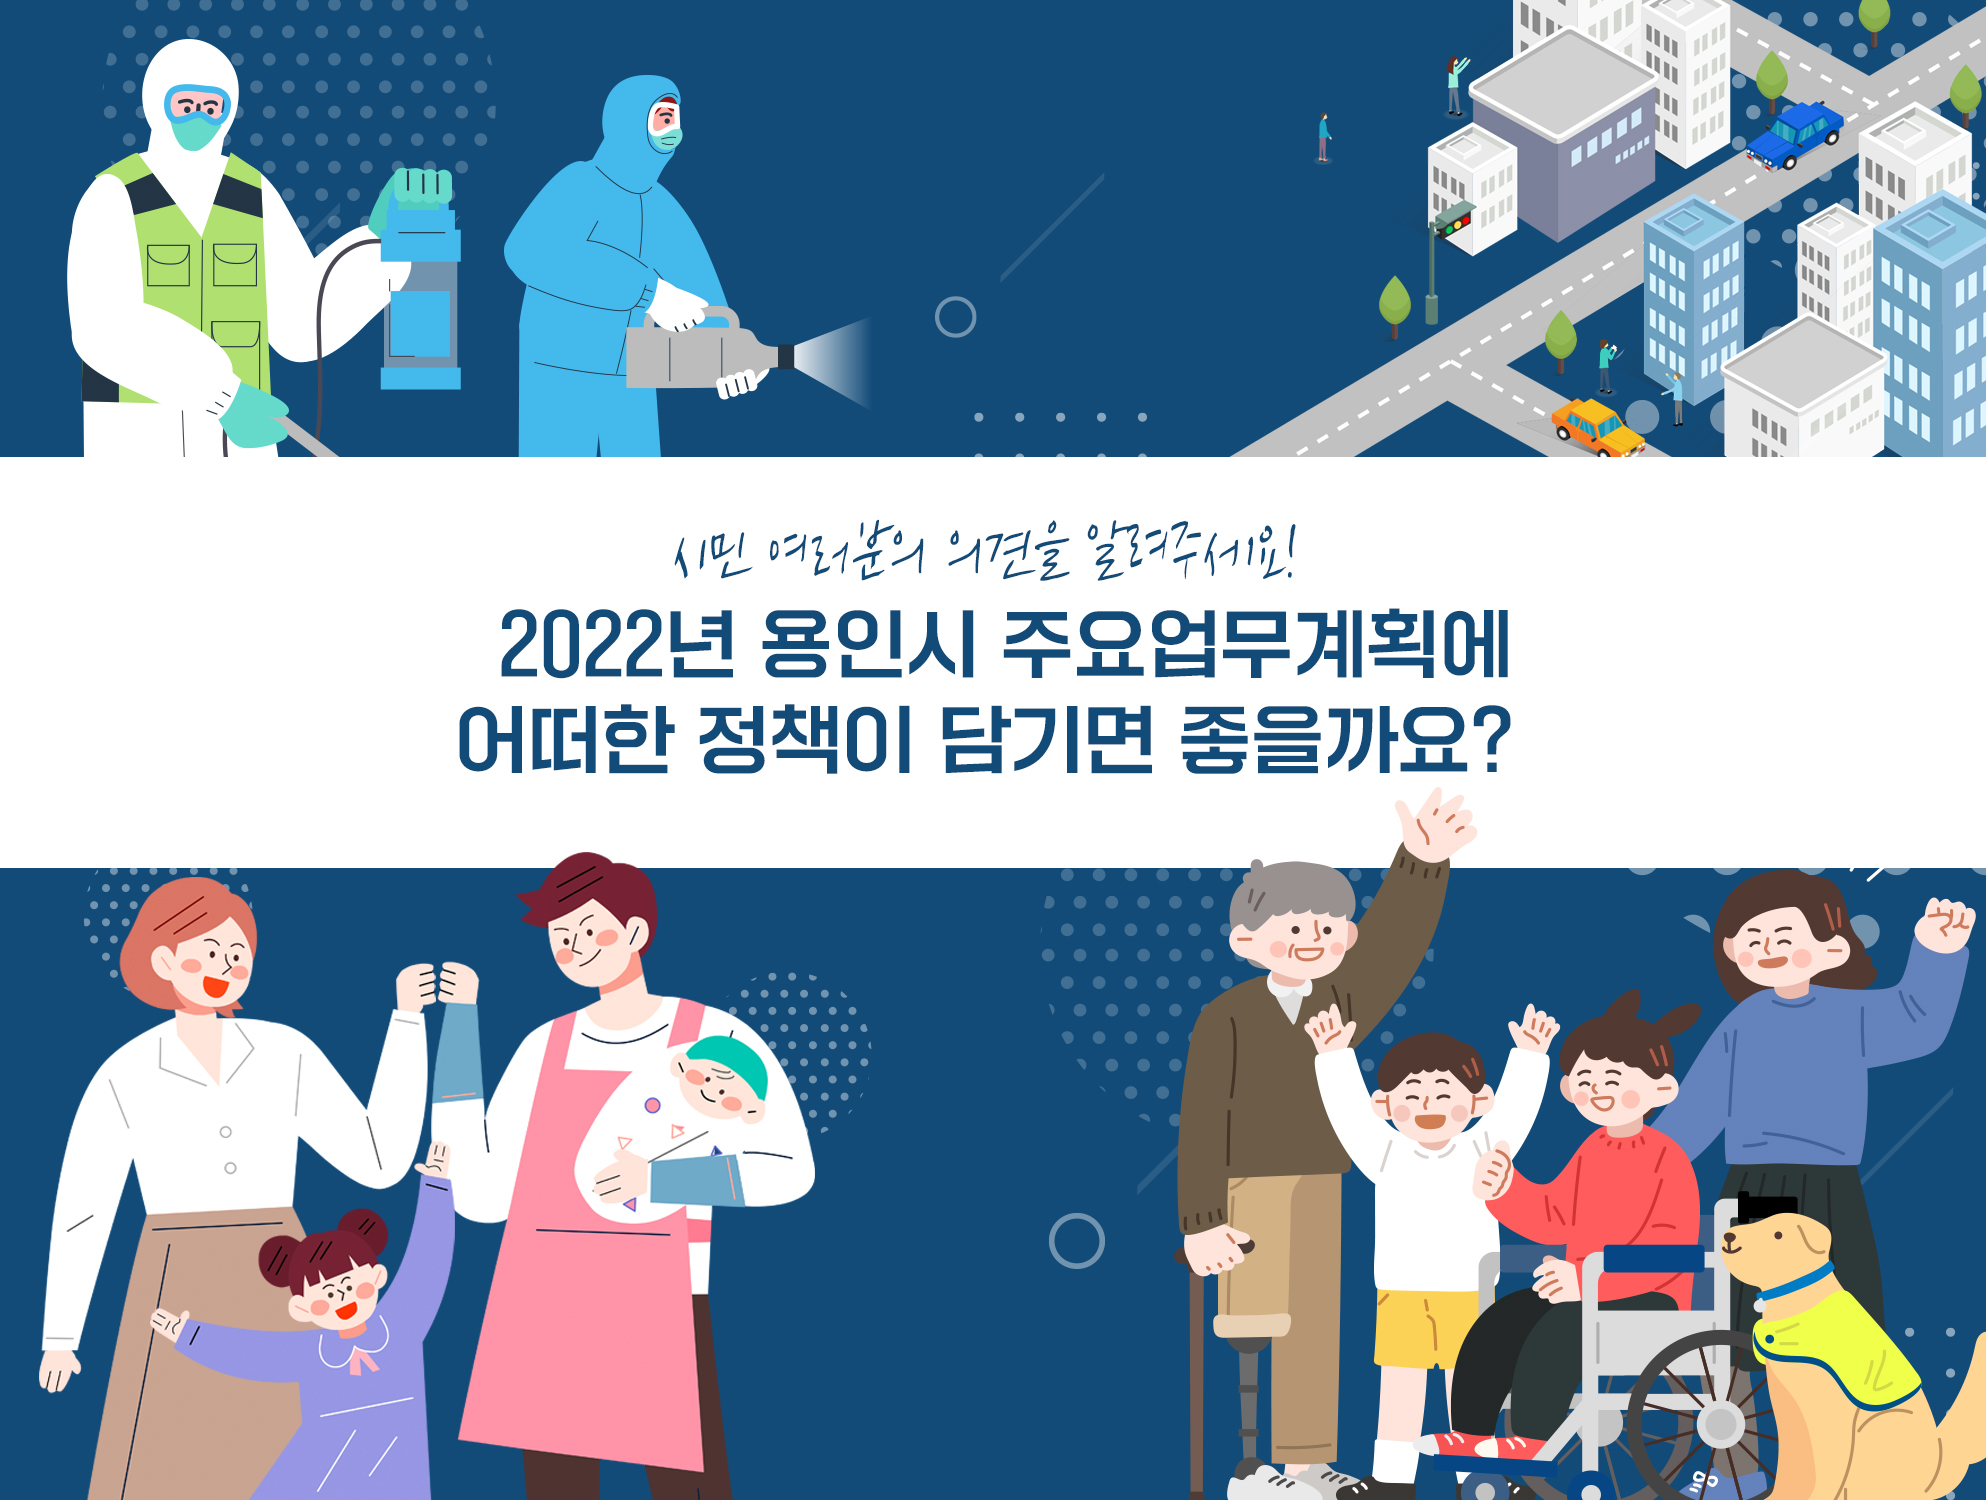 2022년 용인시 주요업무계획에 어떠한 정책이 담기면 좋을까요?